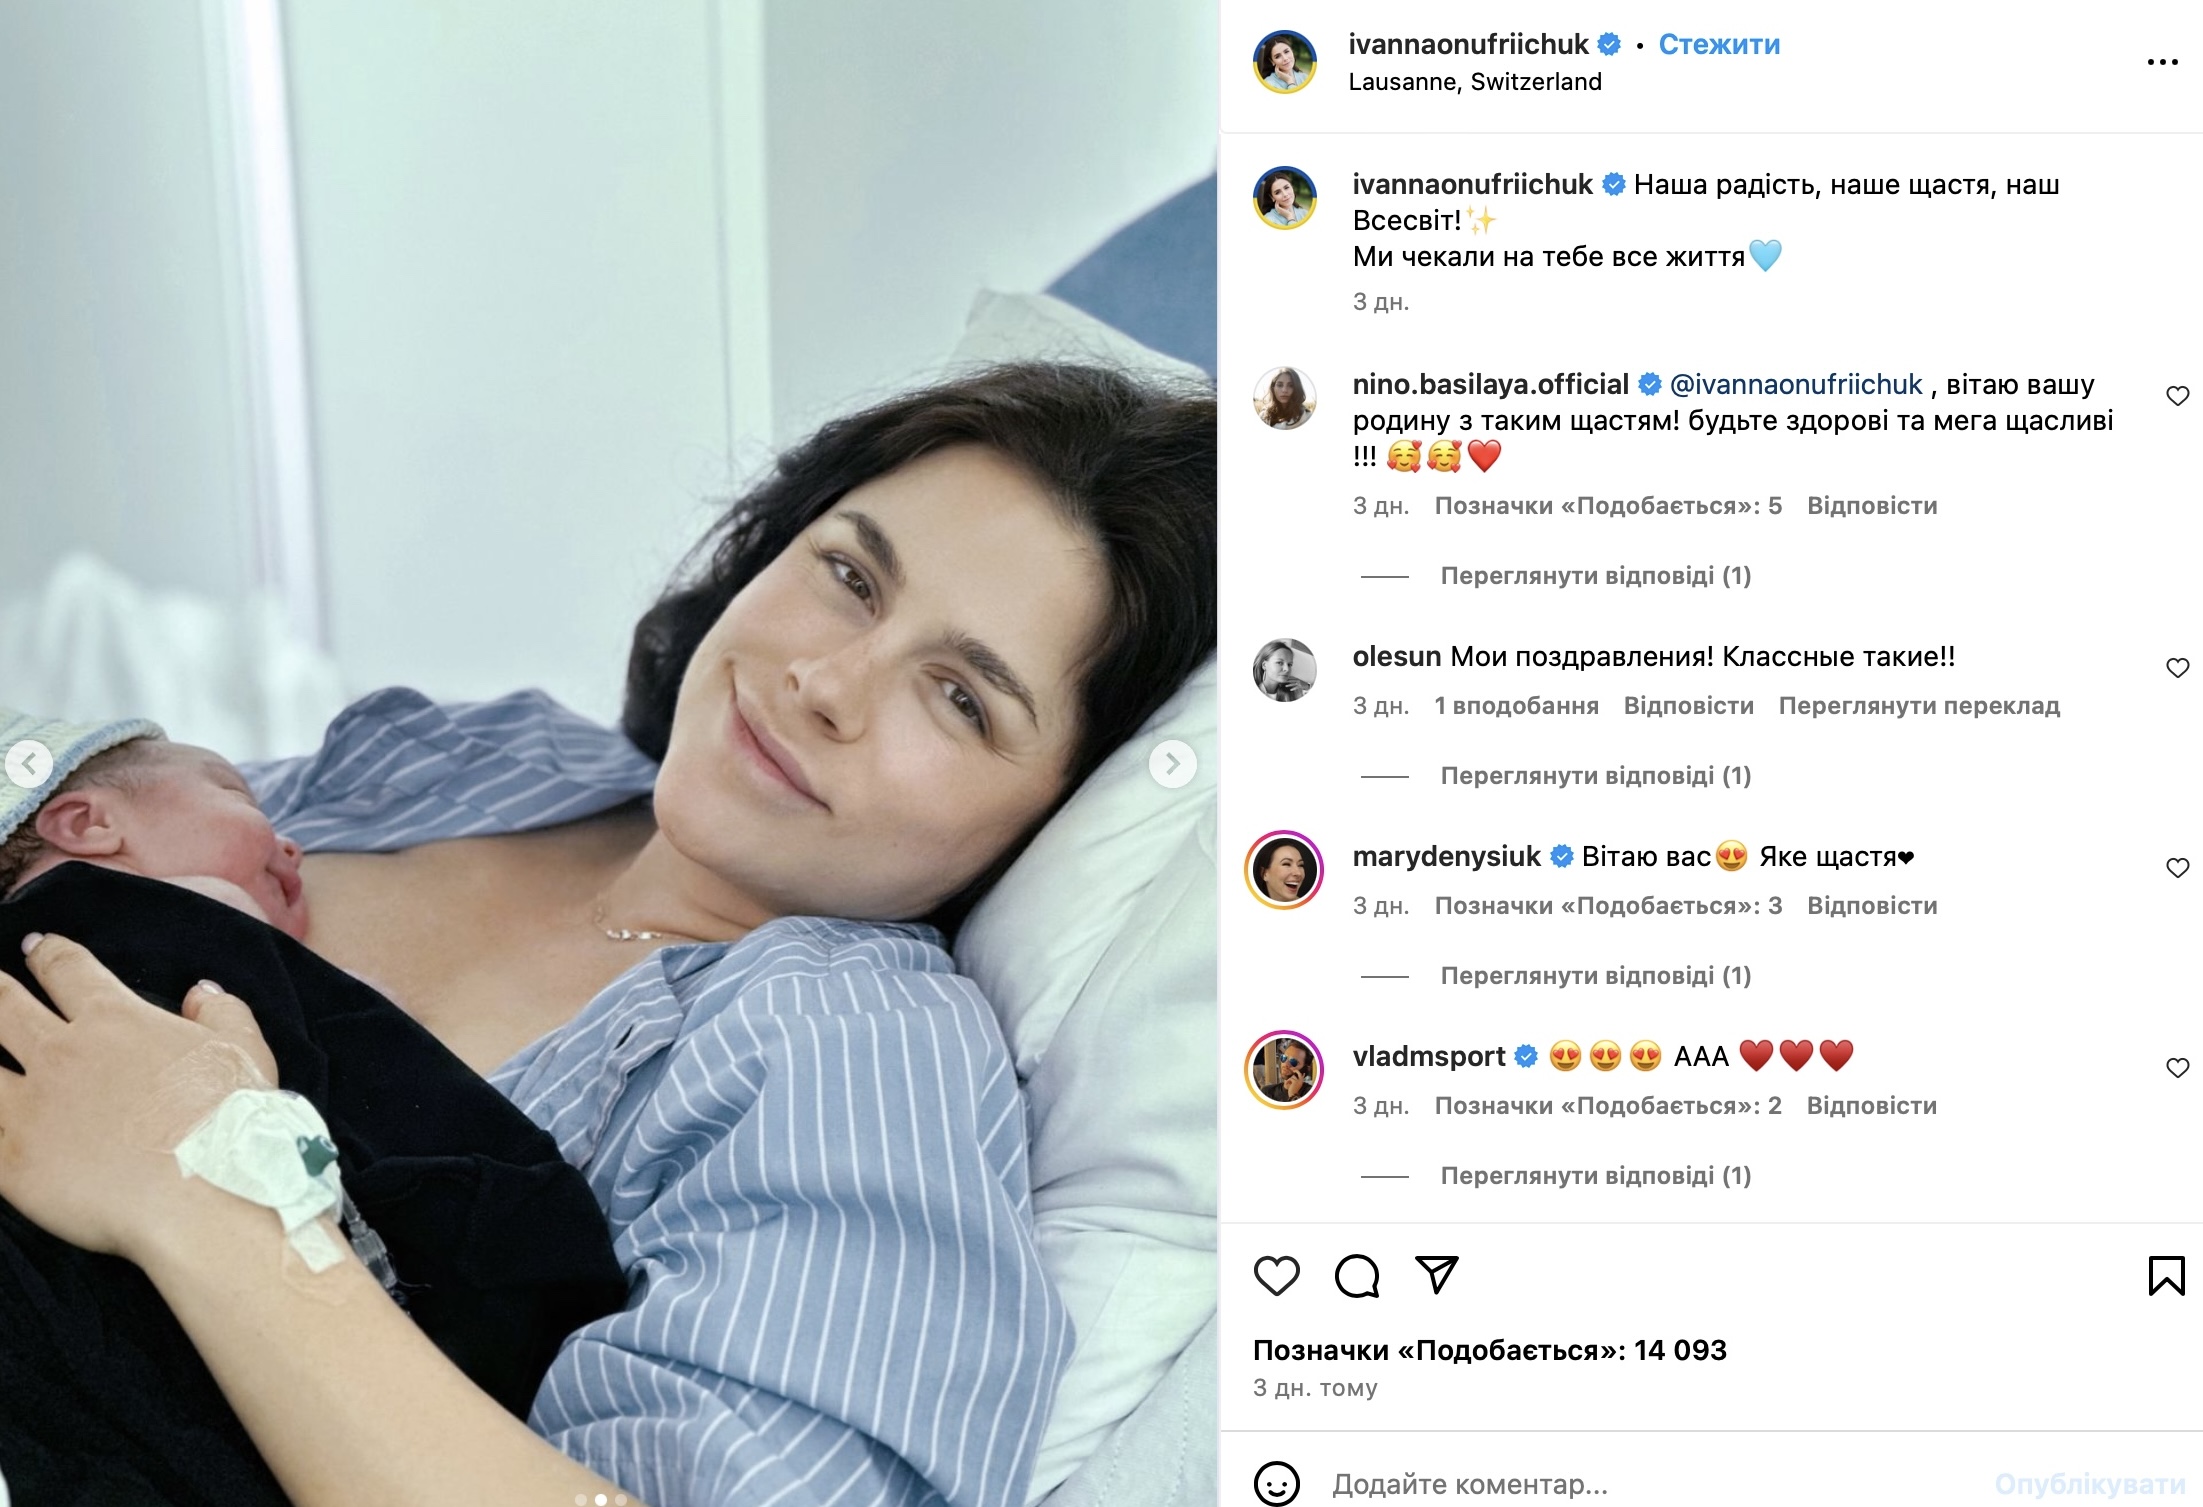 Зірка каналу 1+1 Іванна Онуфрійчук розсекретила імʼя новонародженого. Фото з Instagram @ivannaonufriichuk